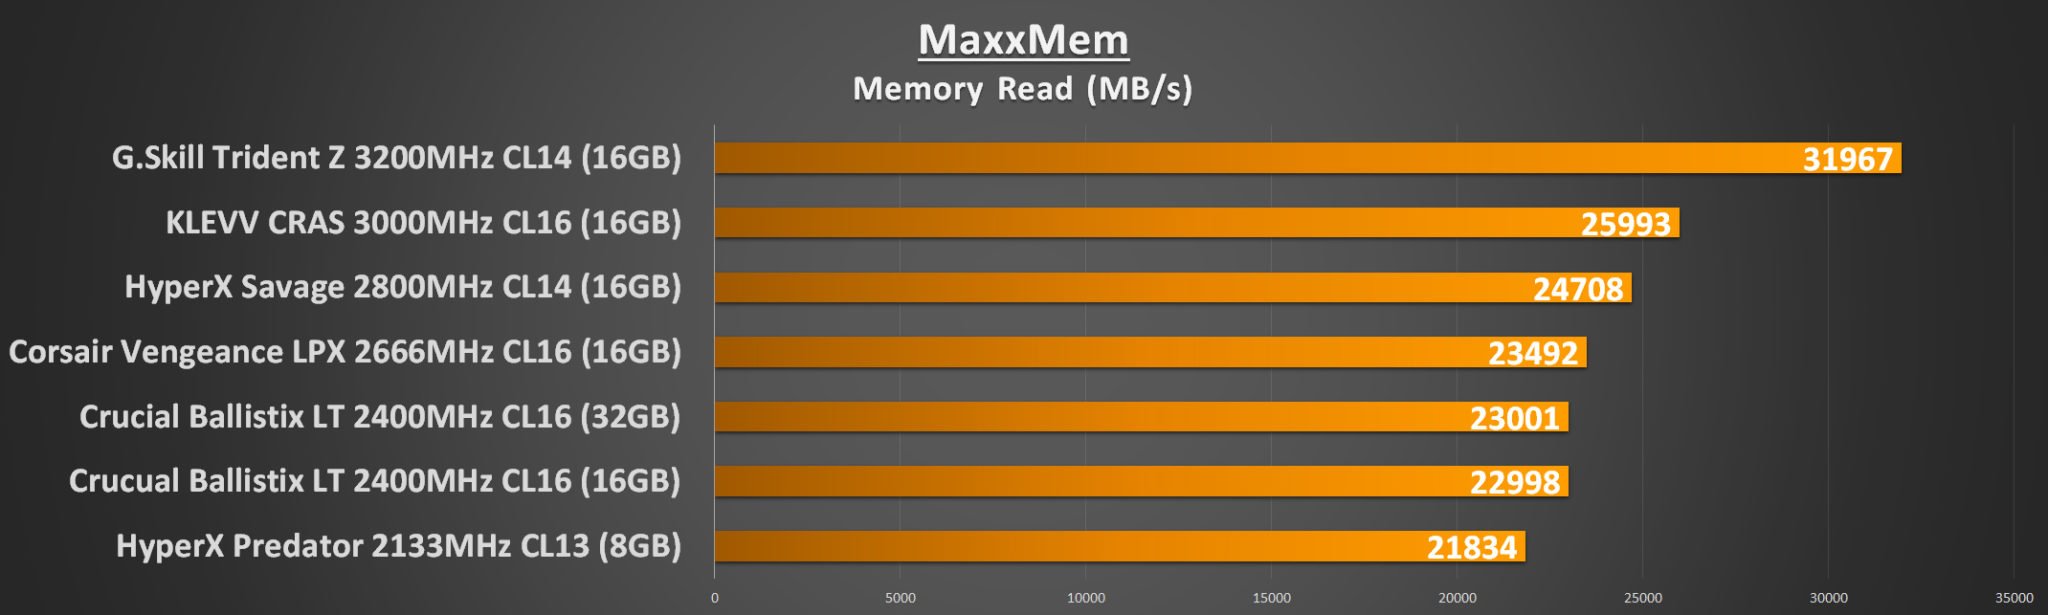 MaxxMem Memory Read